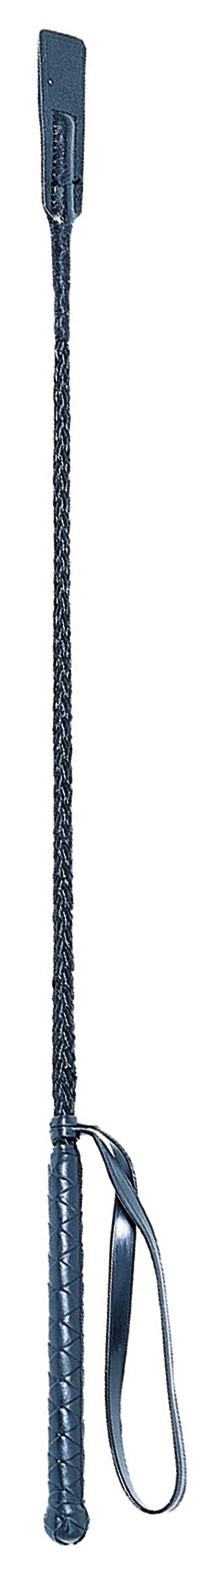 Kerbl díjugrató pálca paskolóval 65 cm